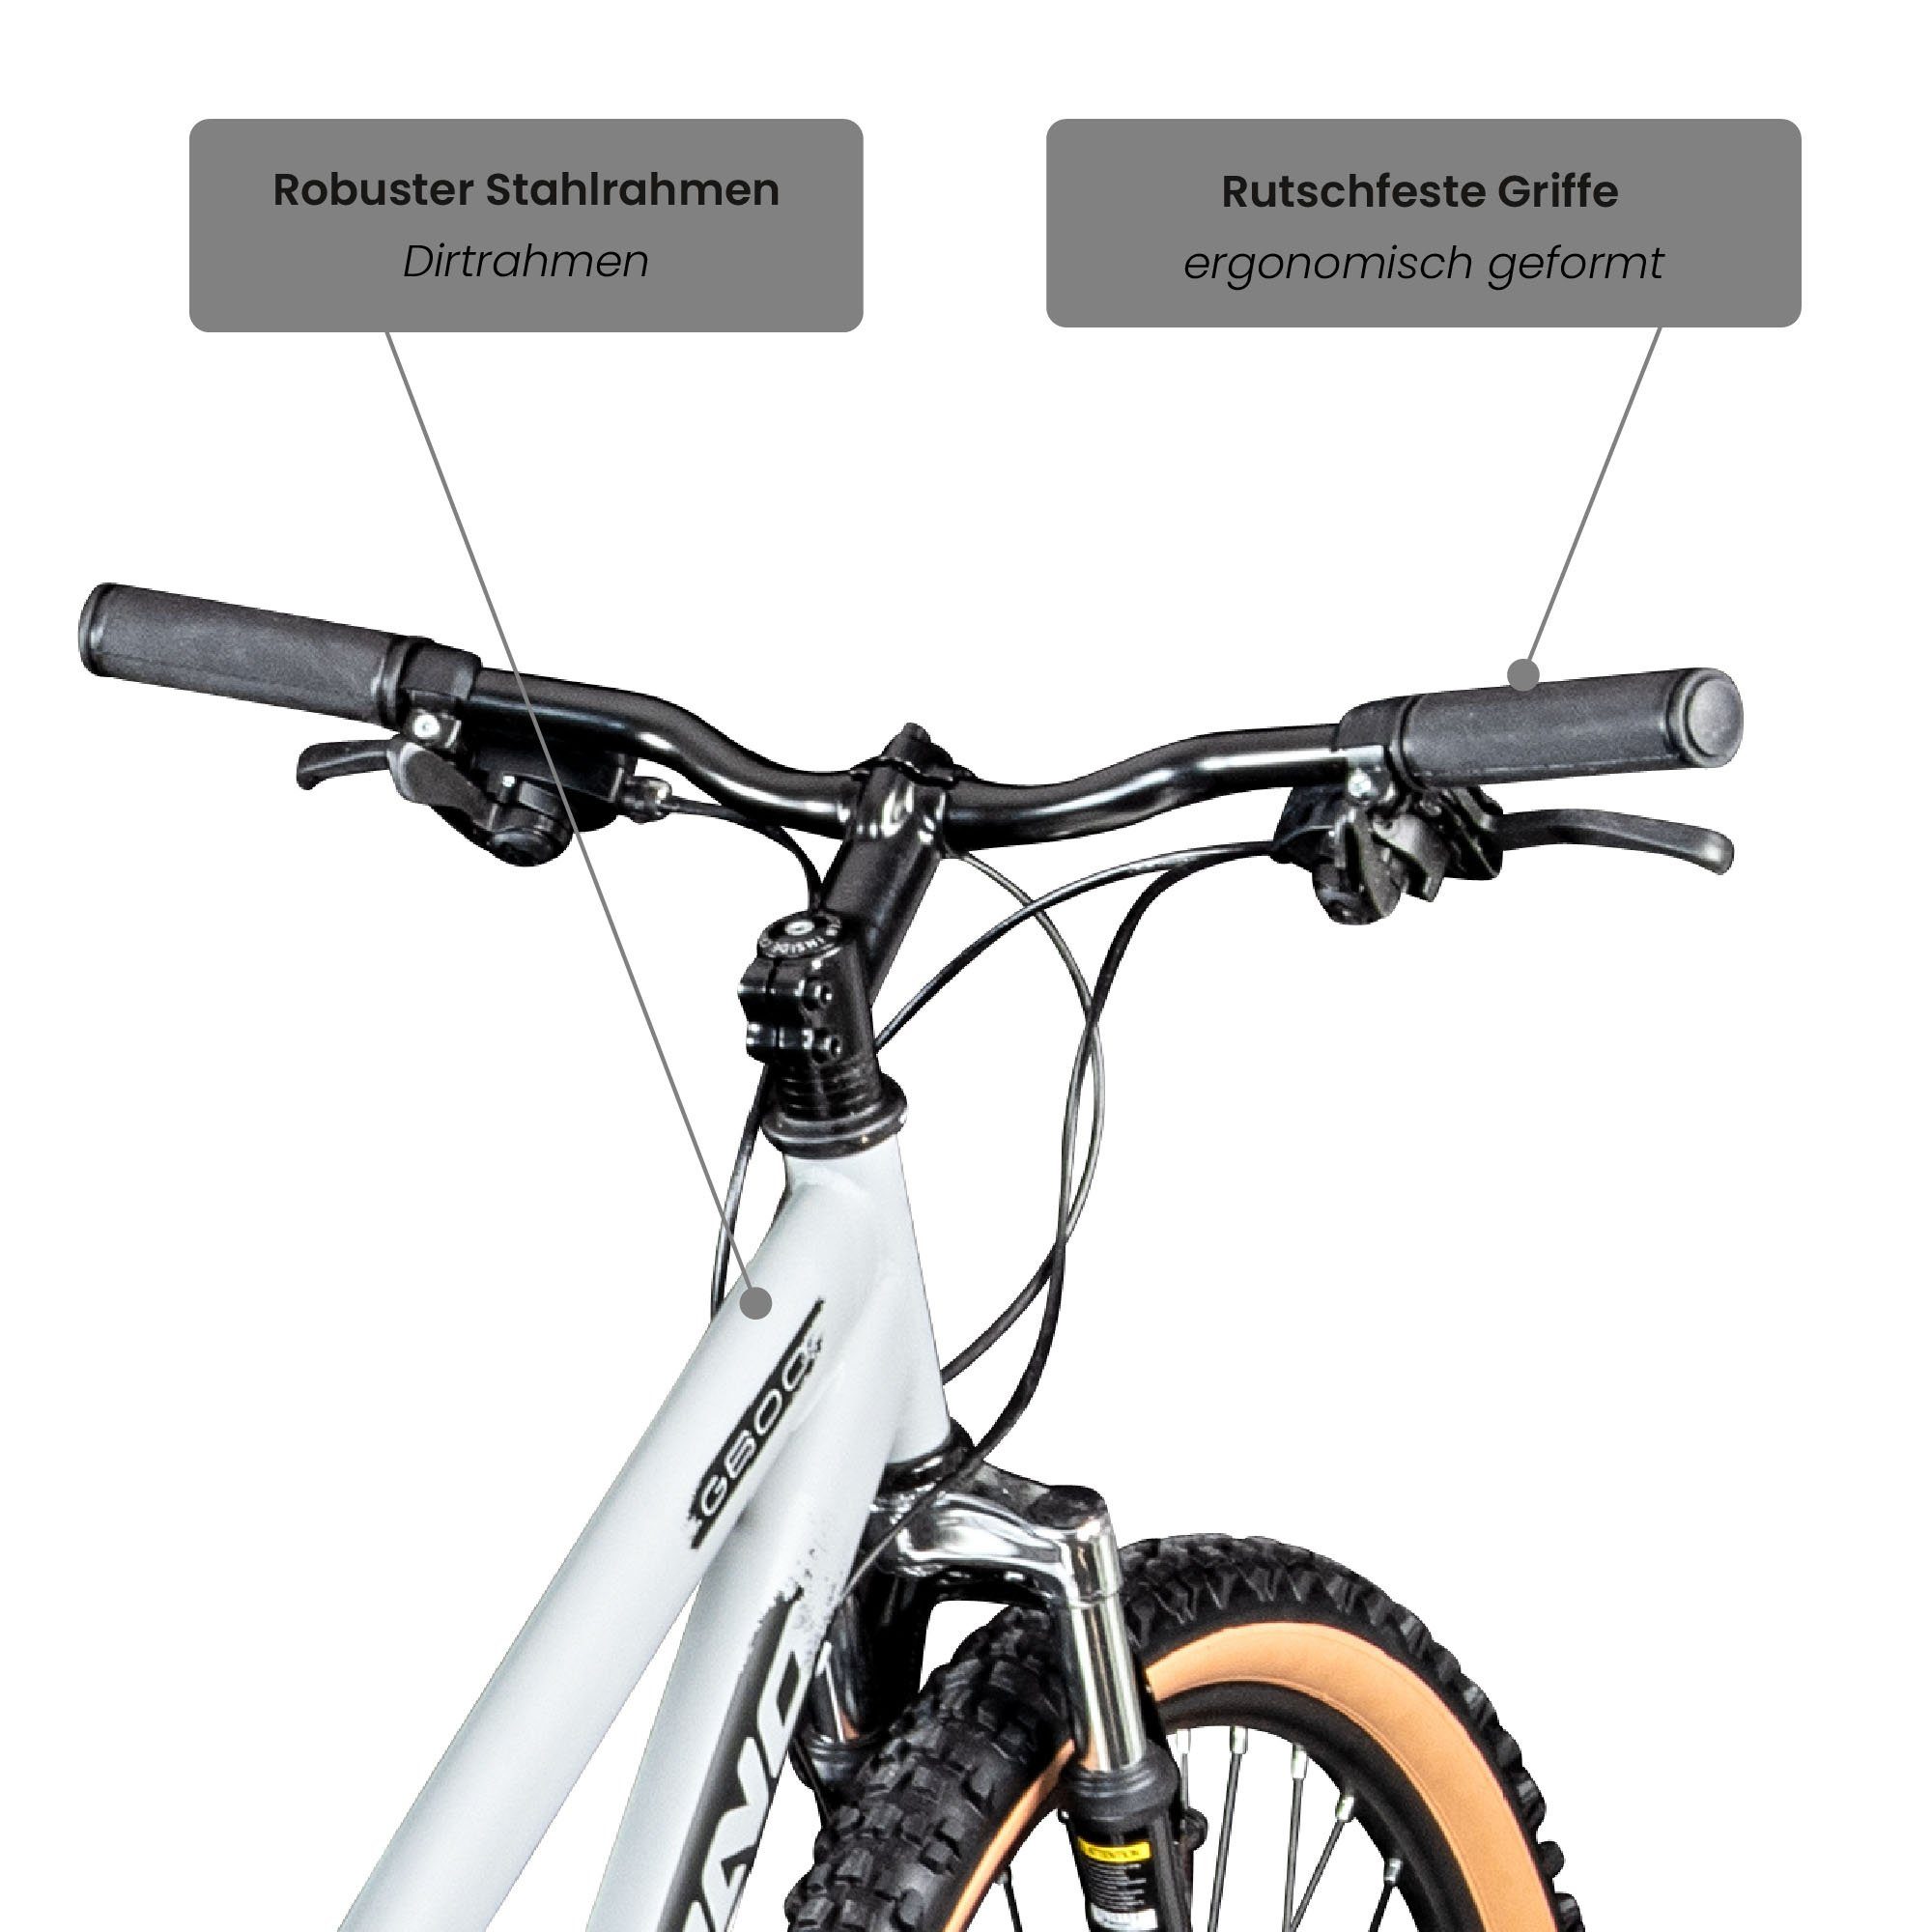 Dirtbike Kettenschaltung, 26 cm G600, - Mountainbike Gang, Galano für 145 silbergrau/schwarz 165 und Erwachsene Fahrrad 18 Jugendliche Zoll